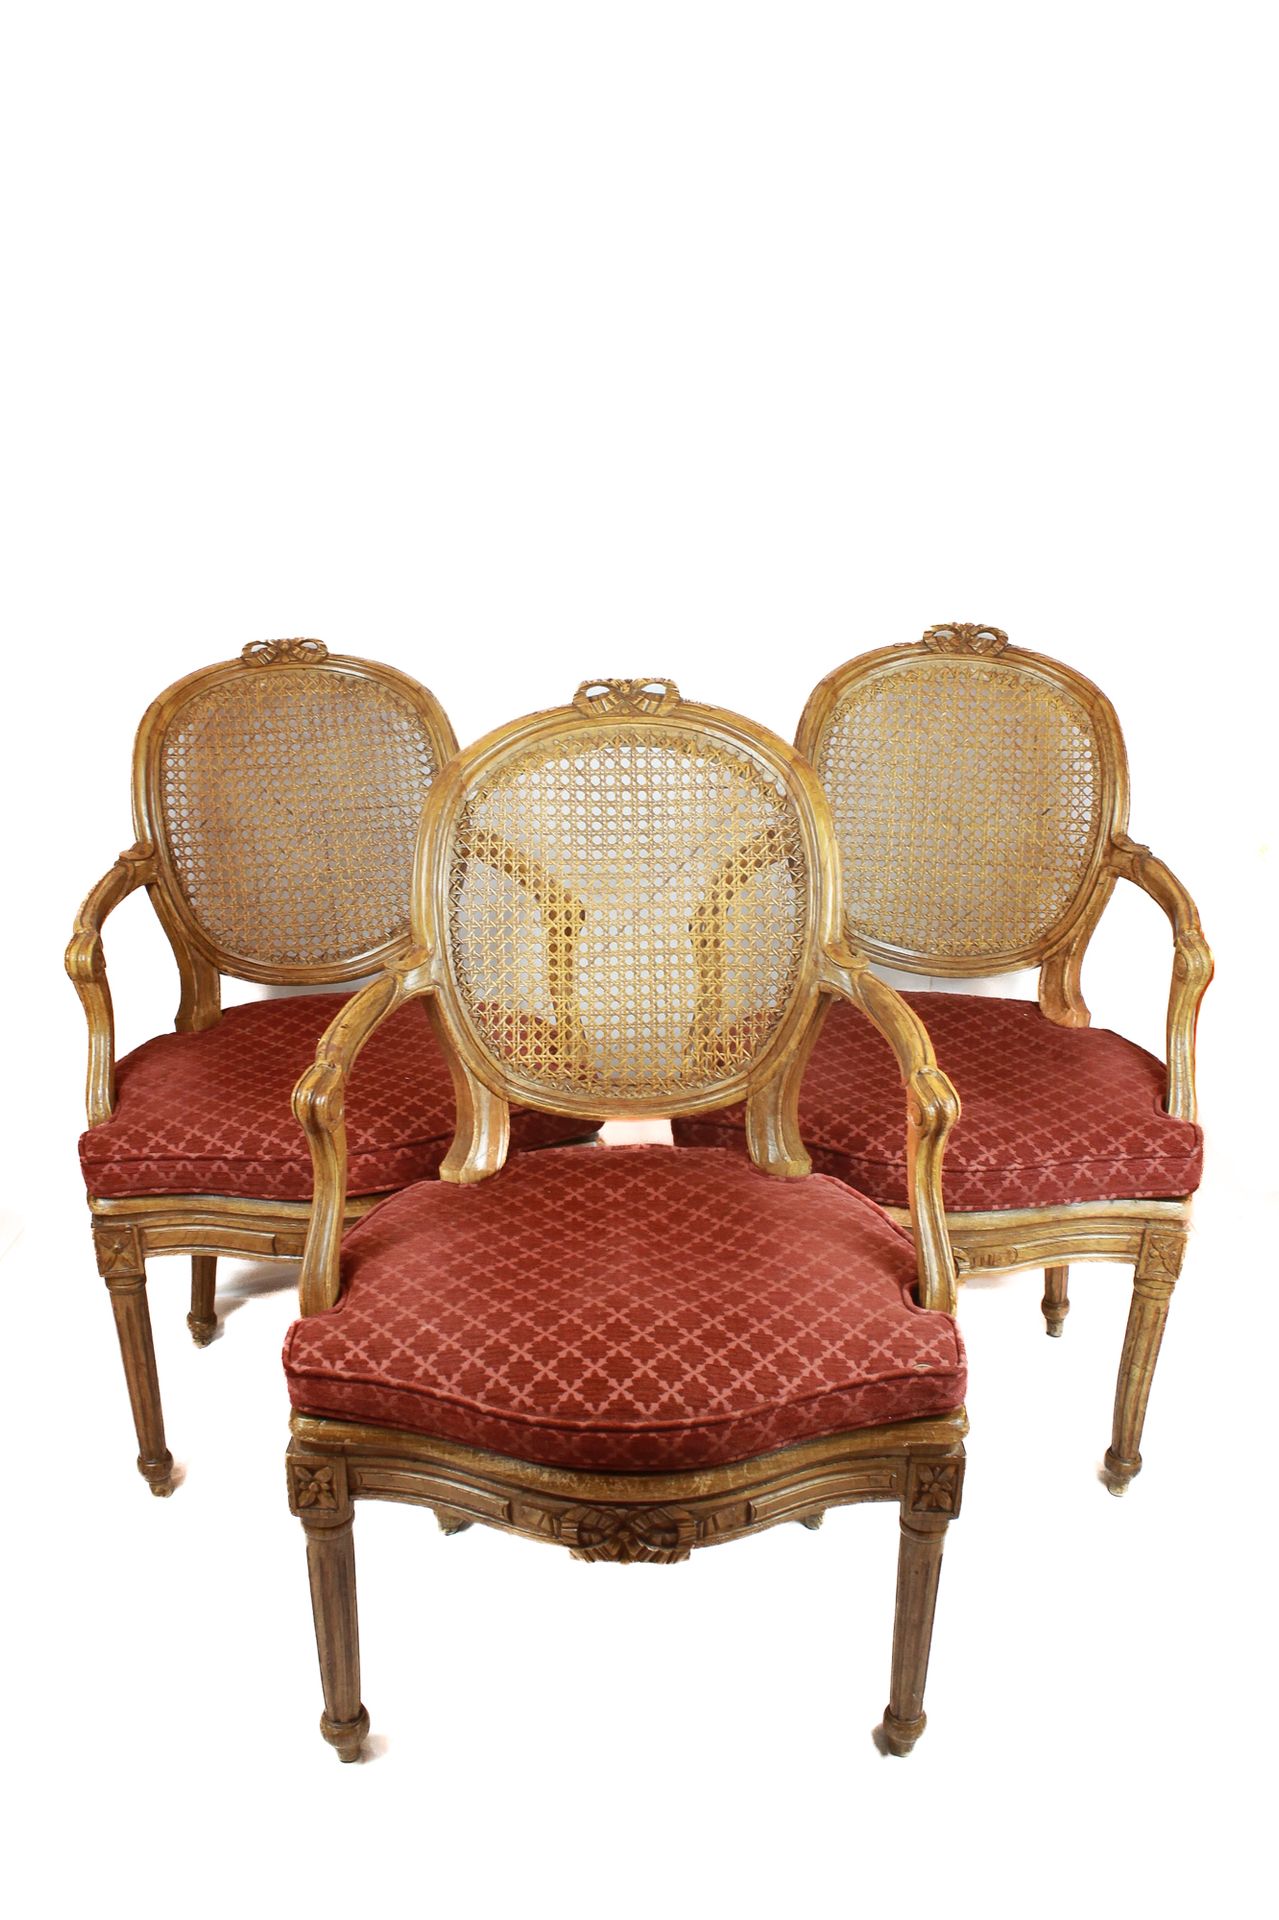 Set of 8 armchairs 95 x 60 x 48 cm
En madera de haya, con respaldo medallón